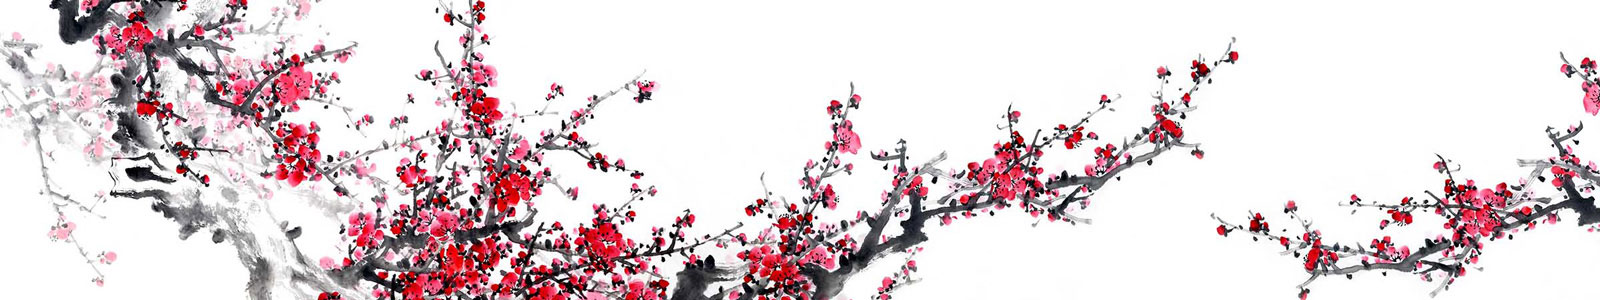 №3232 - Цветение сливы, китайская живопись